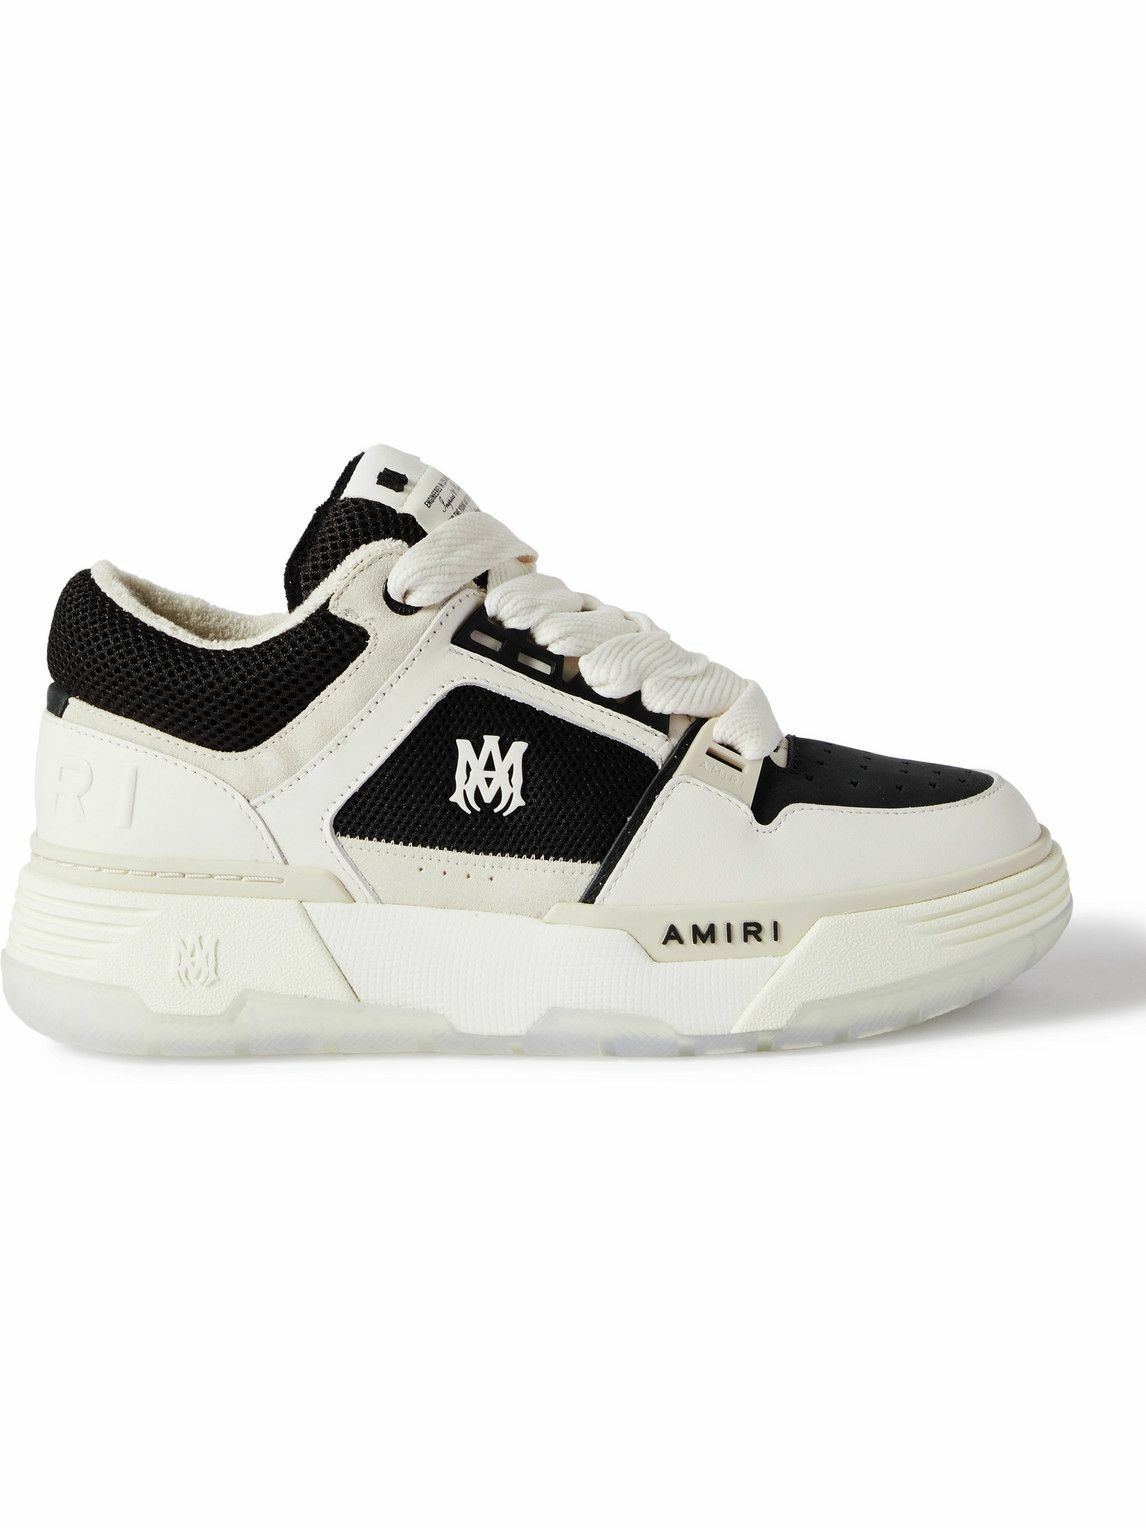 AMIRI - MA-1 Leather, Nubuck and Mesh Sneakers - White Amiri